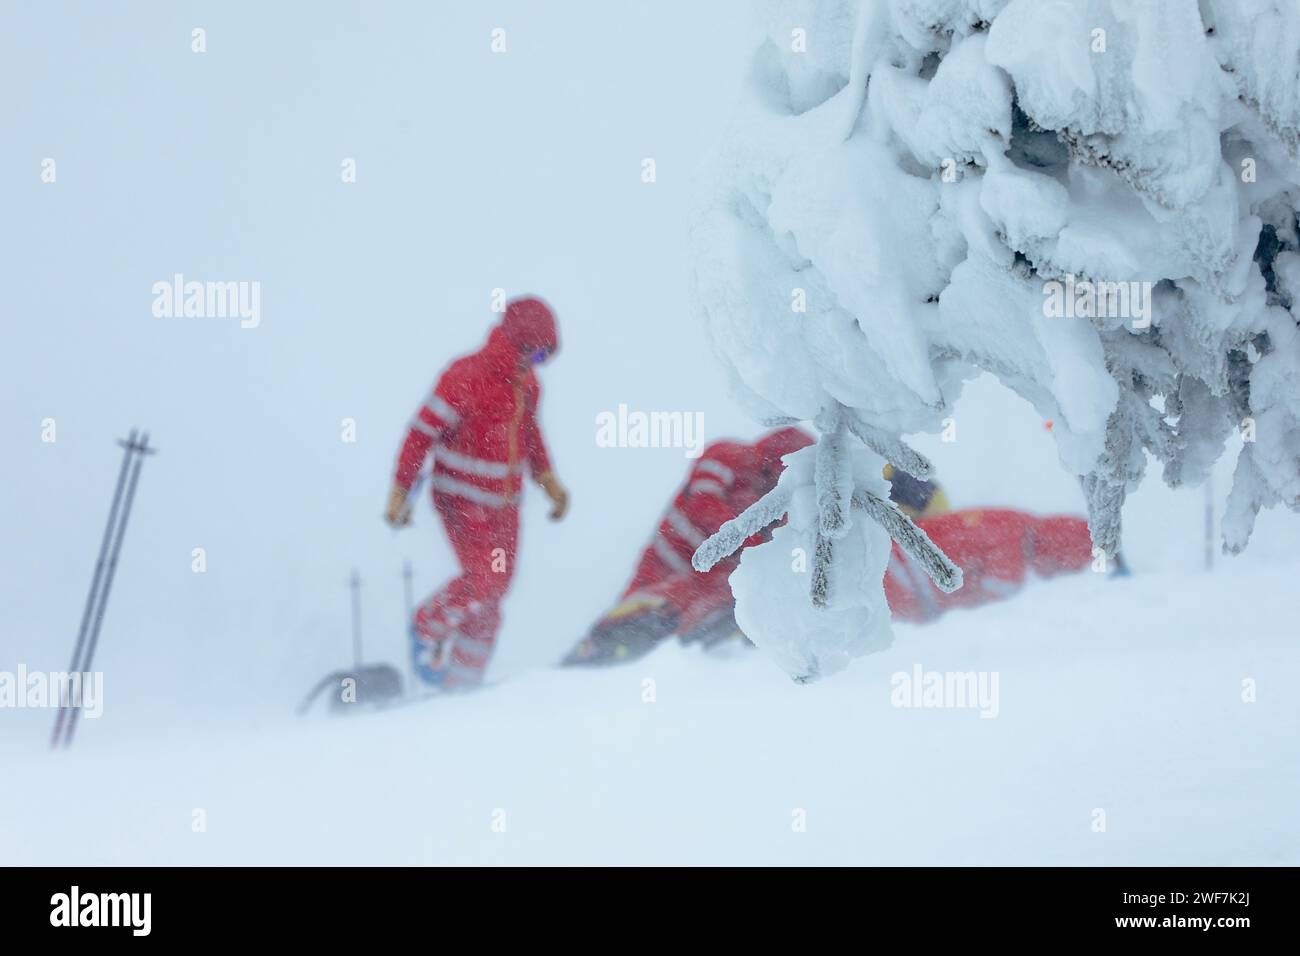 Sanitäter-Team des Rettungsdienstes, das im Winter während des Schneesturms in den Bergen hilft. Selektiver Fokus auf verschneiten Bäumen. Themen retten bei extremen Wetterbedingungen. Stockfoto